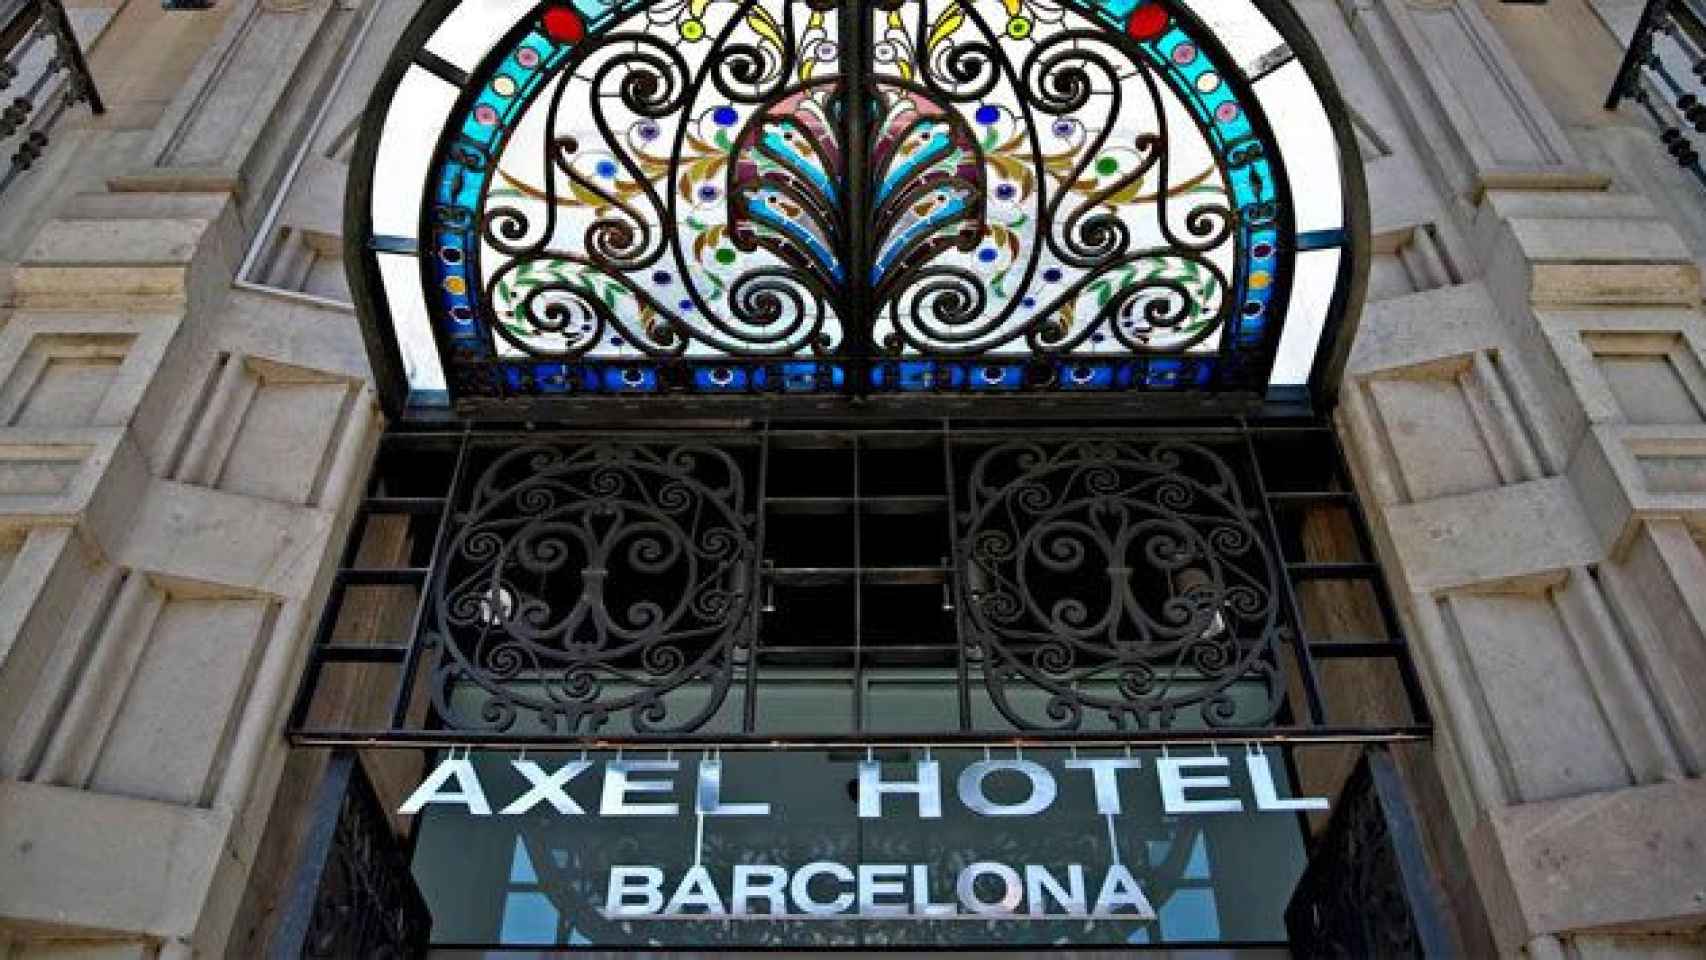 El Axel Hotel de Barcelona, el primero que fundó la cadena, que ha trasladado su sede de Barcelona a Madrid / CG